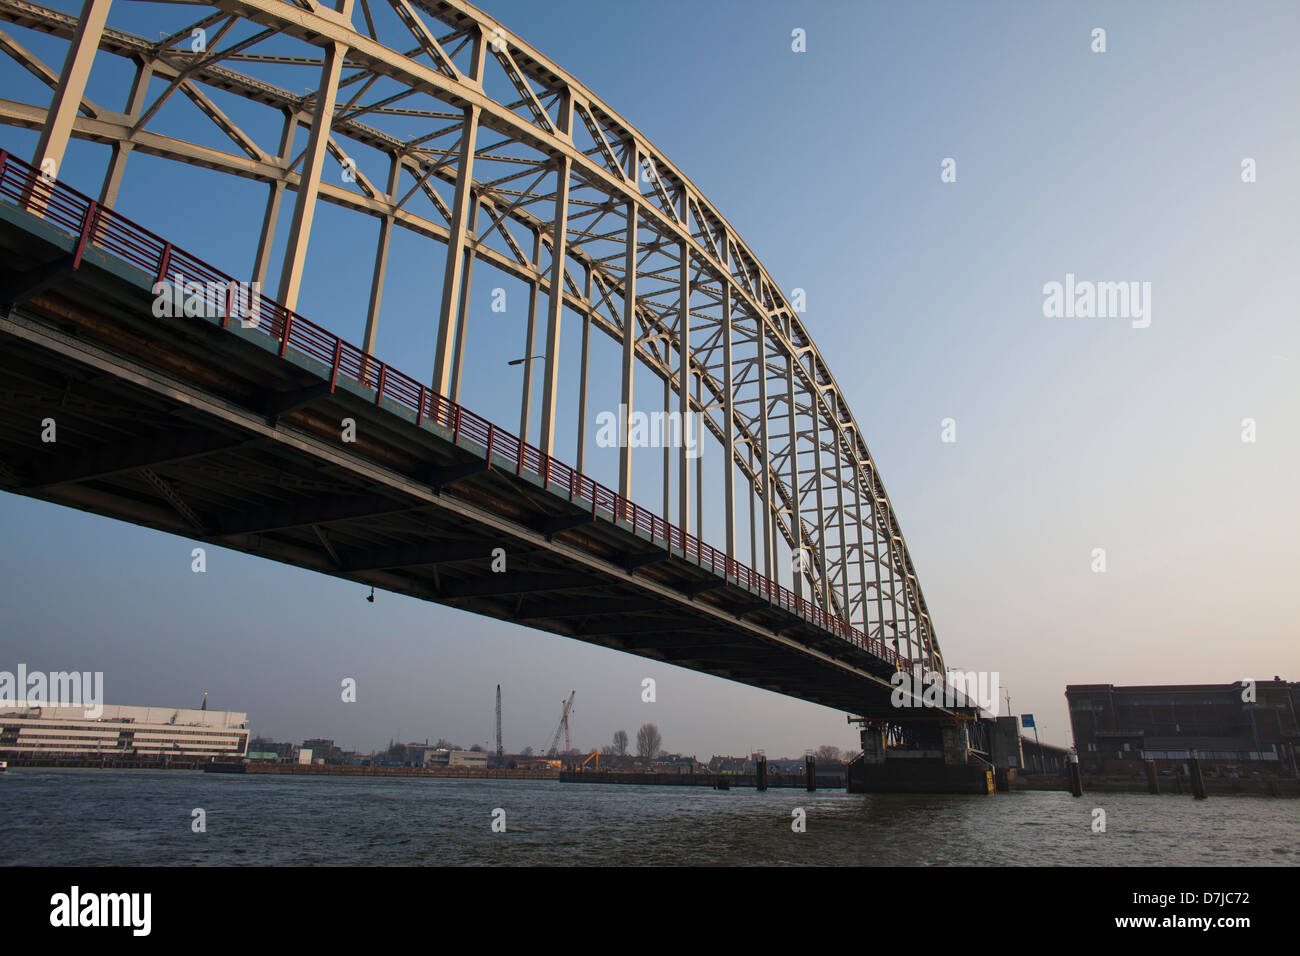 (train) Bridge over the river 'Maas' in dordrecht. Stock Photo